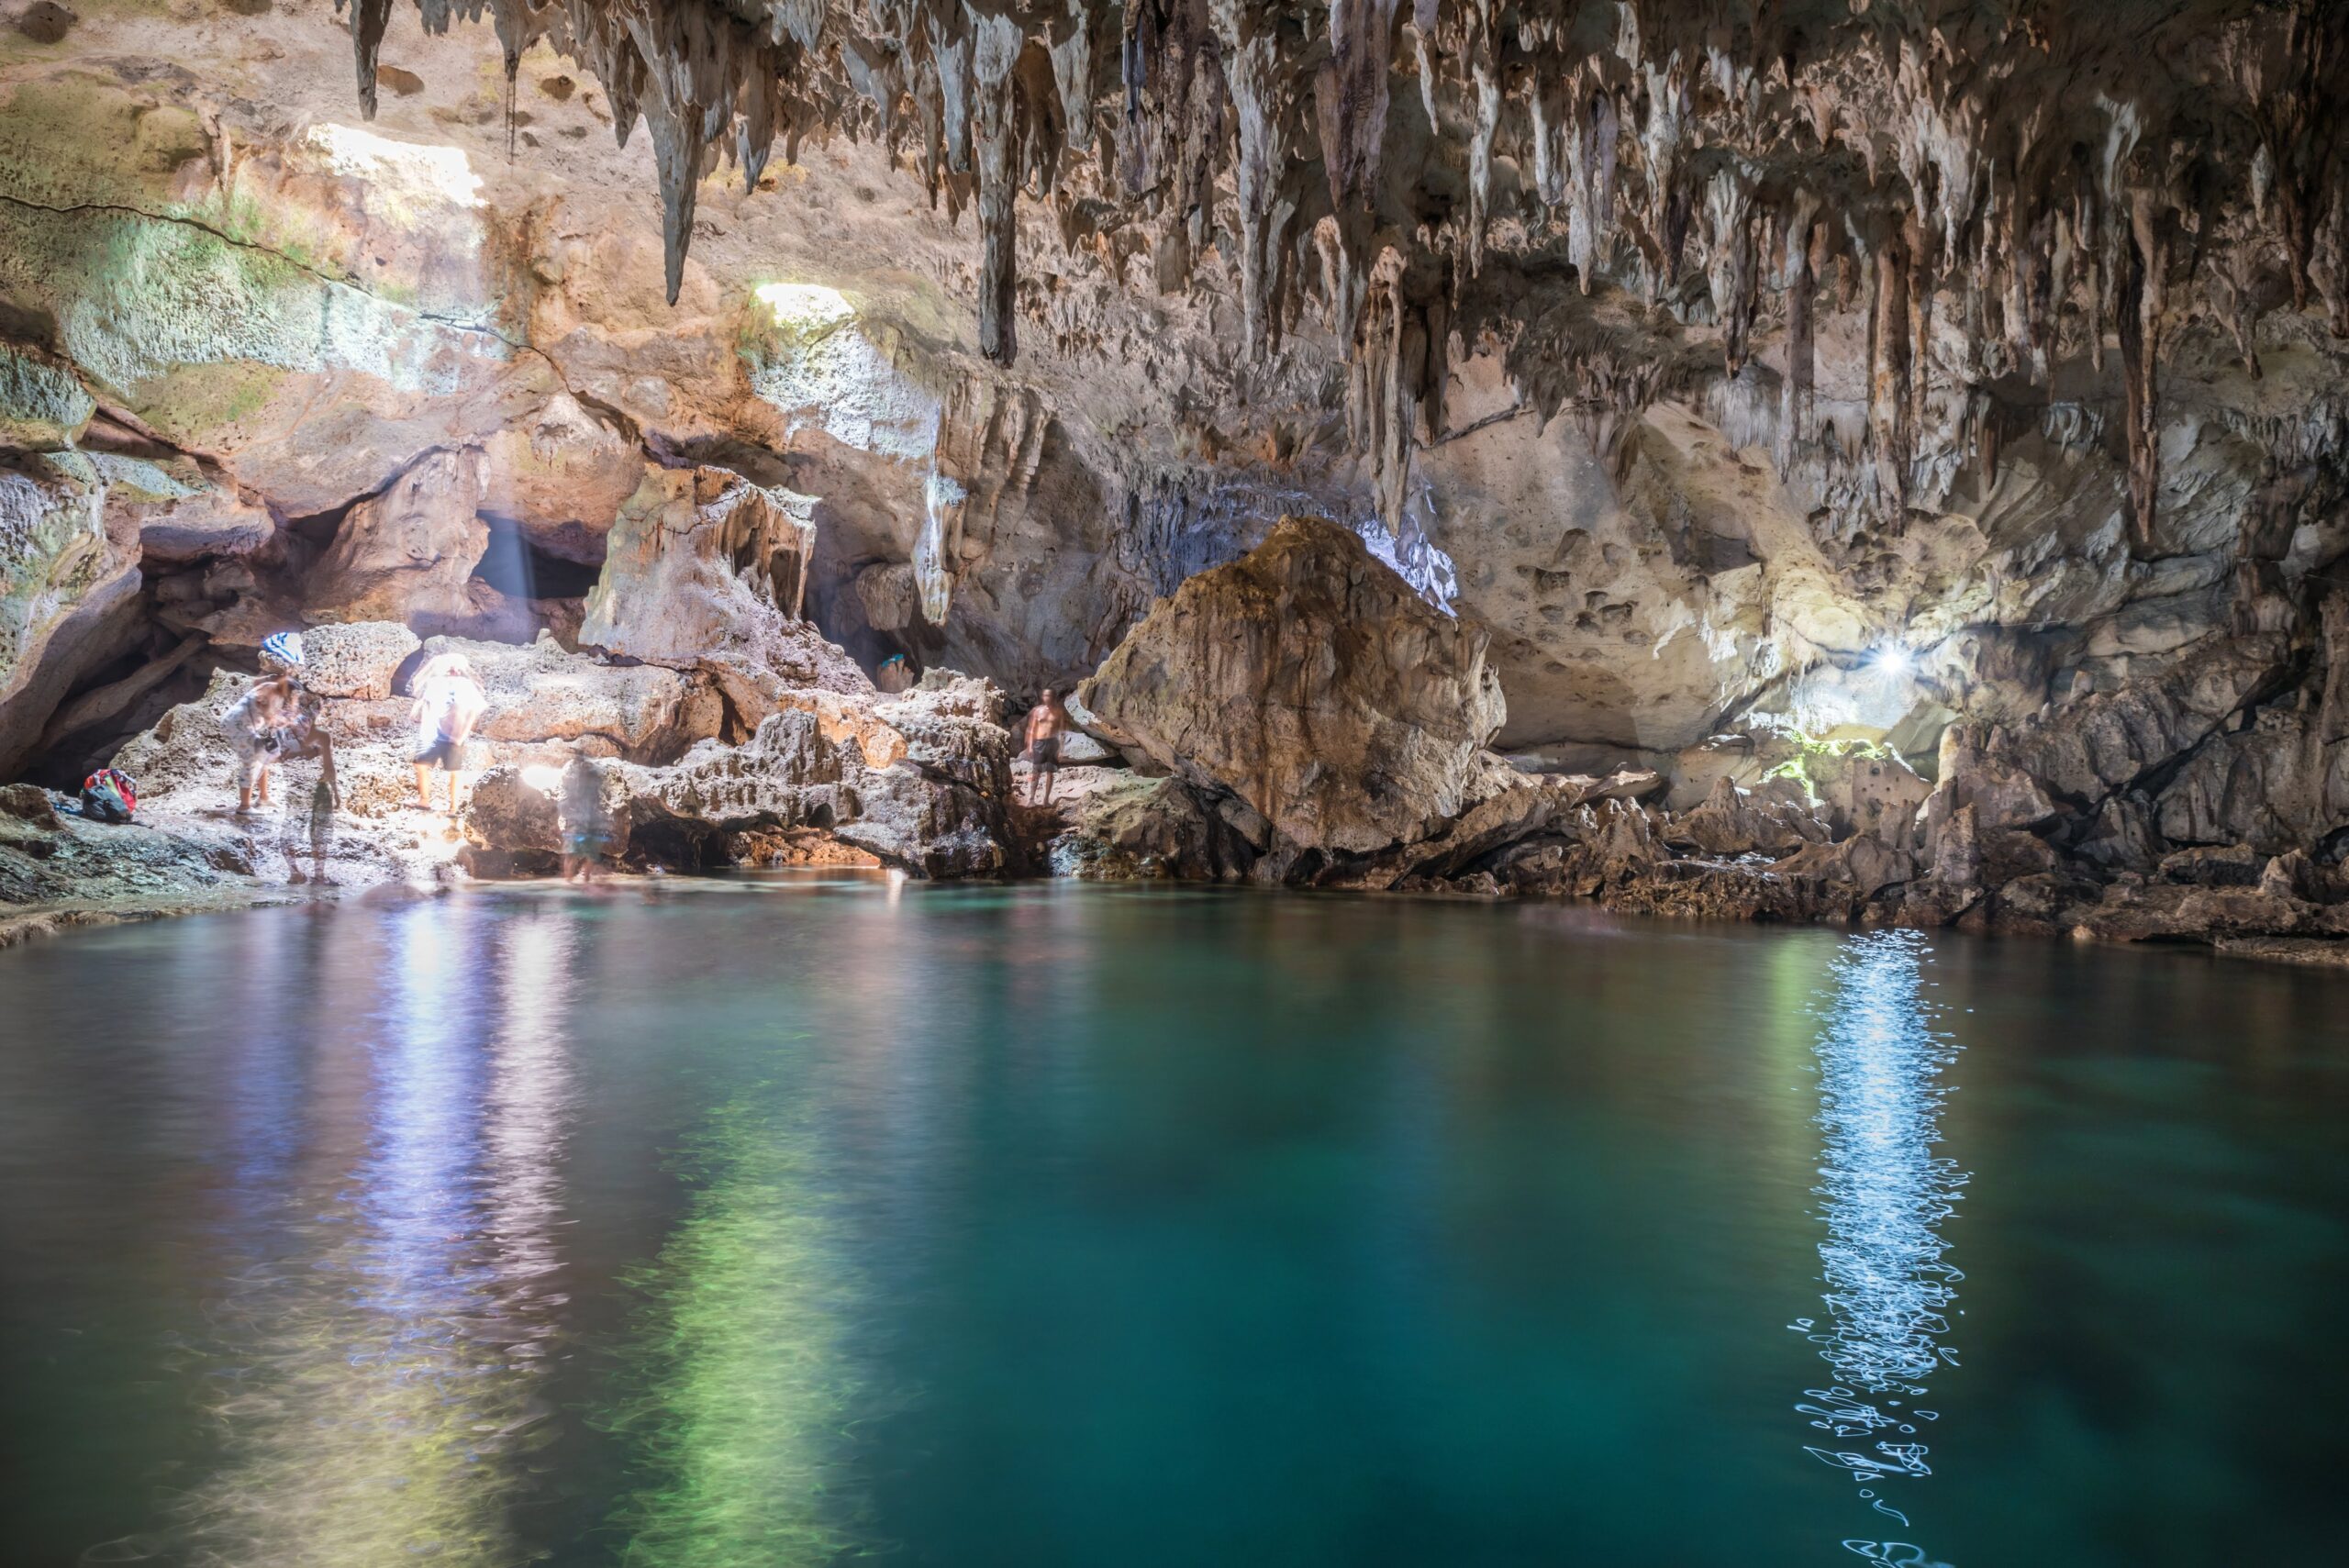 10 Things to do in Bohol - Hinagdanan Cave